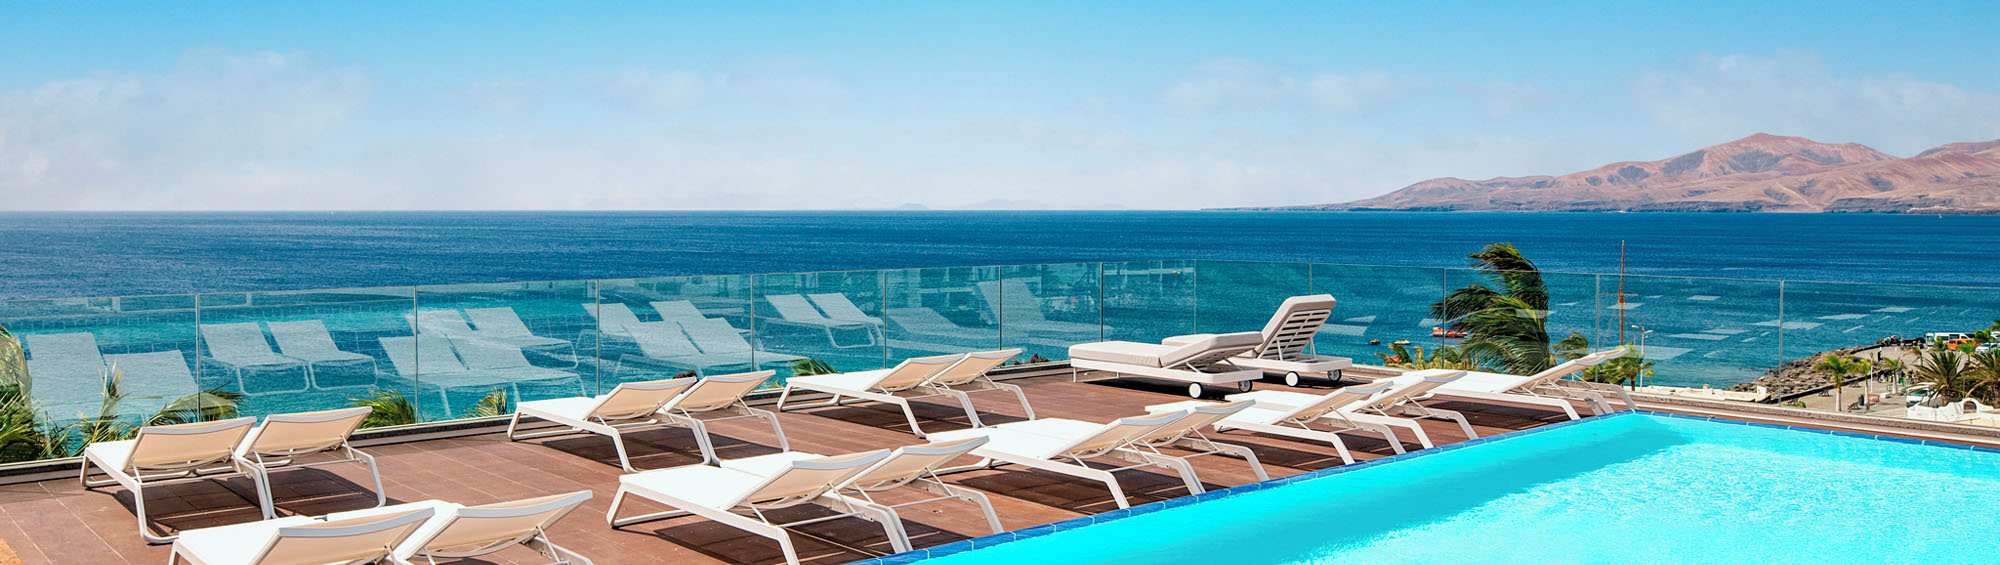 Image of deckchairs overlooking the sea at Hotel Fariones, Puerto Del Carmen, Lanzarote.